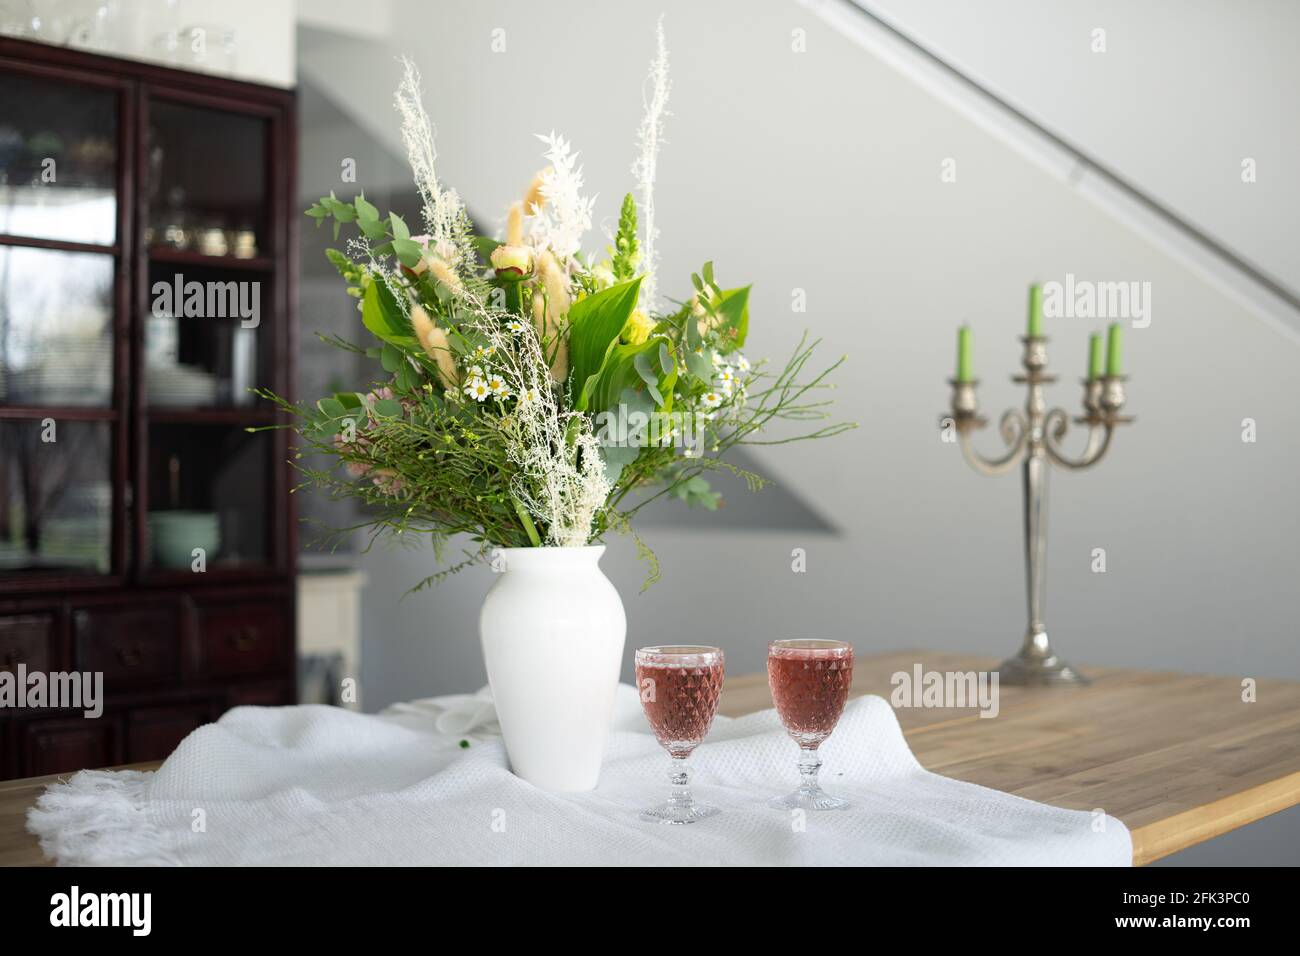 Élégant bouquet de fleurs sur une table accompagné de deux cocktails des gobelets dans une maison moderne et spacieuse Banque D'Images